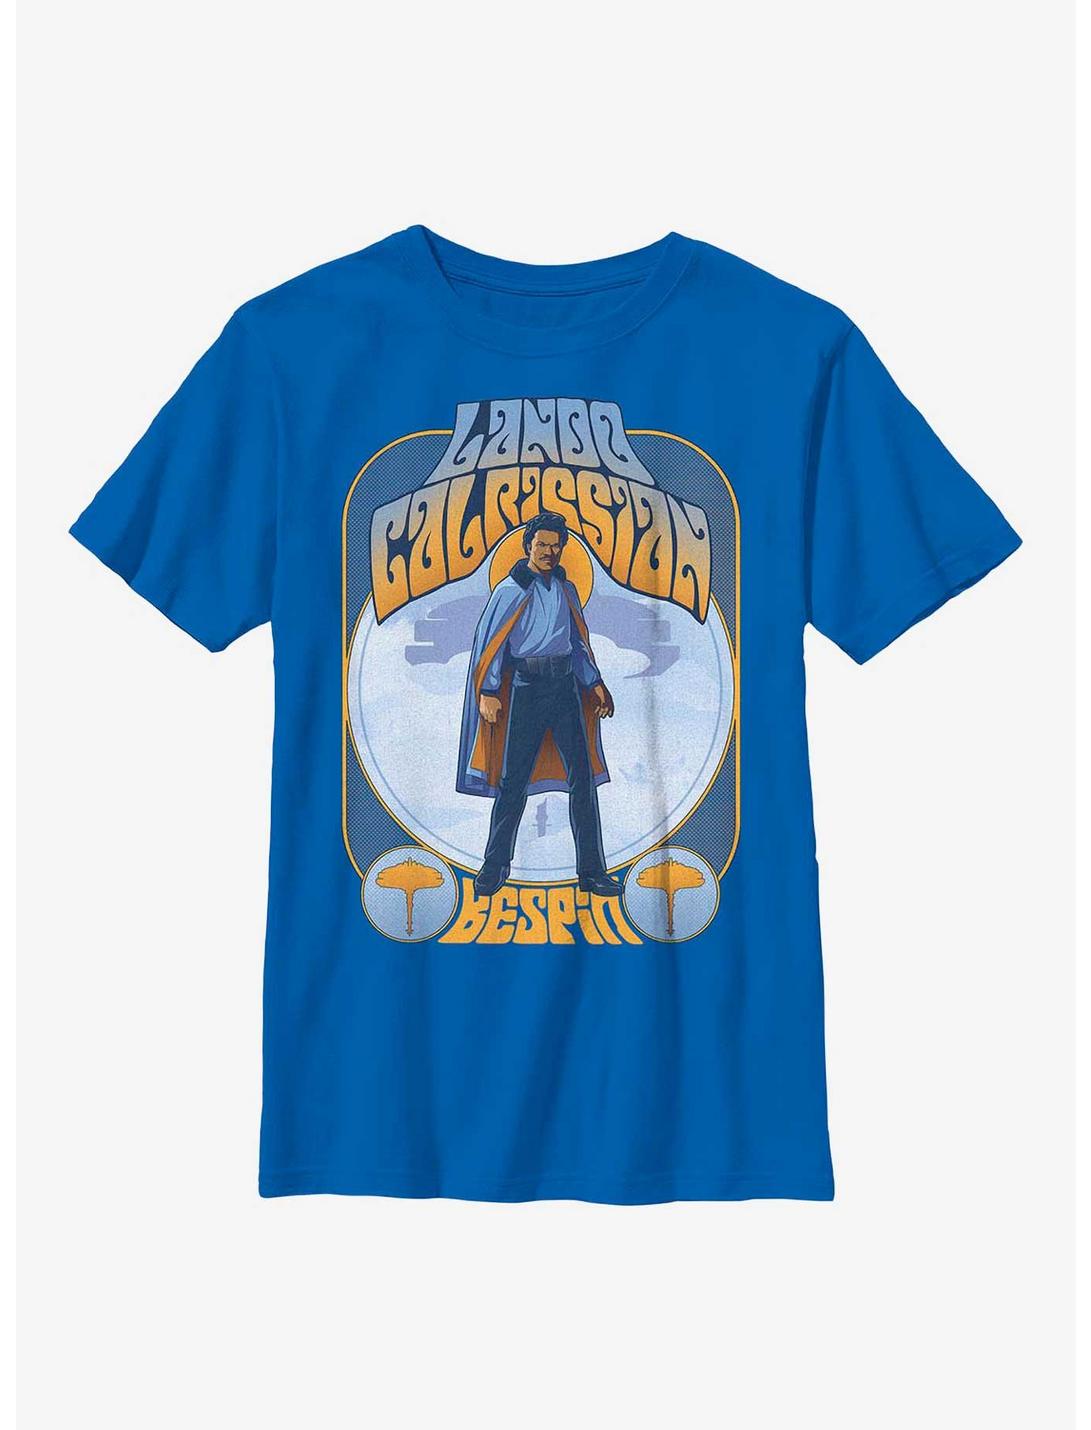 Star Wars Lando Calrissian Bespin Groovy Youth T-Shirt, ROYAL, hi-res